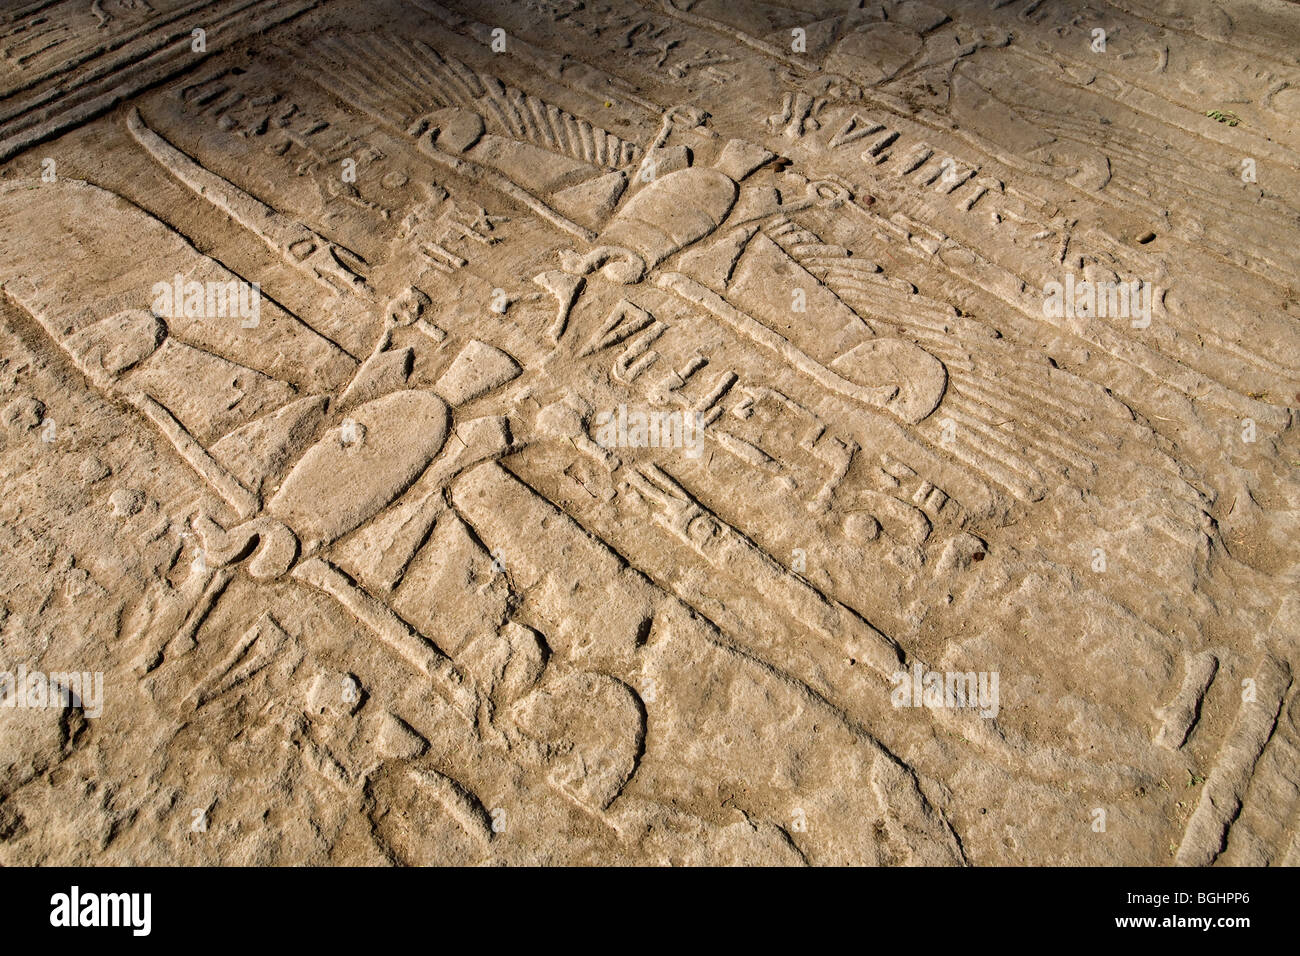 Caduto il blocco a soffitto mostra spead avvoltoio alato sollievo al tempio di Montu a Tod, Valle del Nilo, a sud di Luxor, Egitto Foto Stock